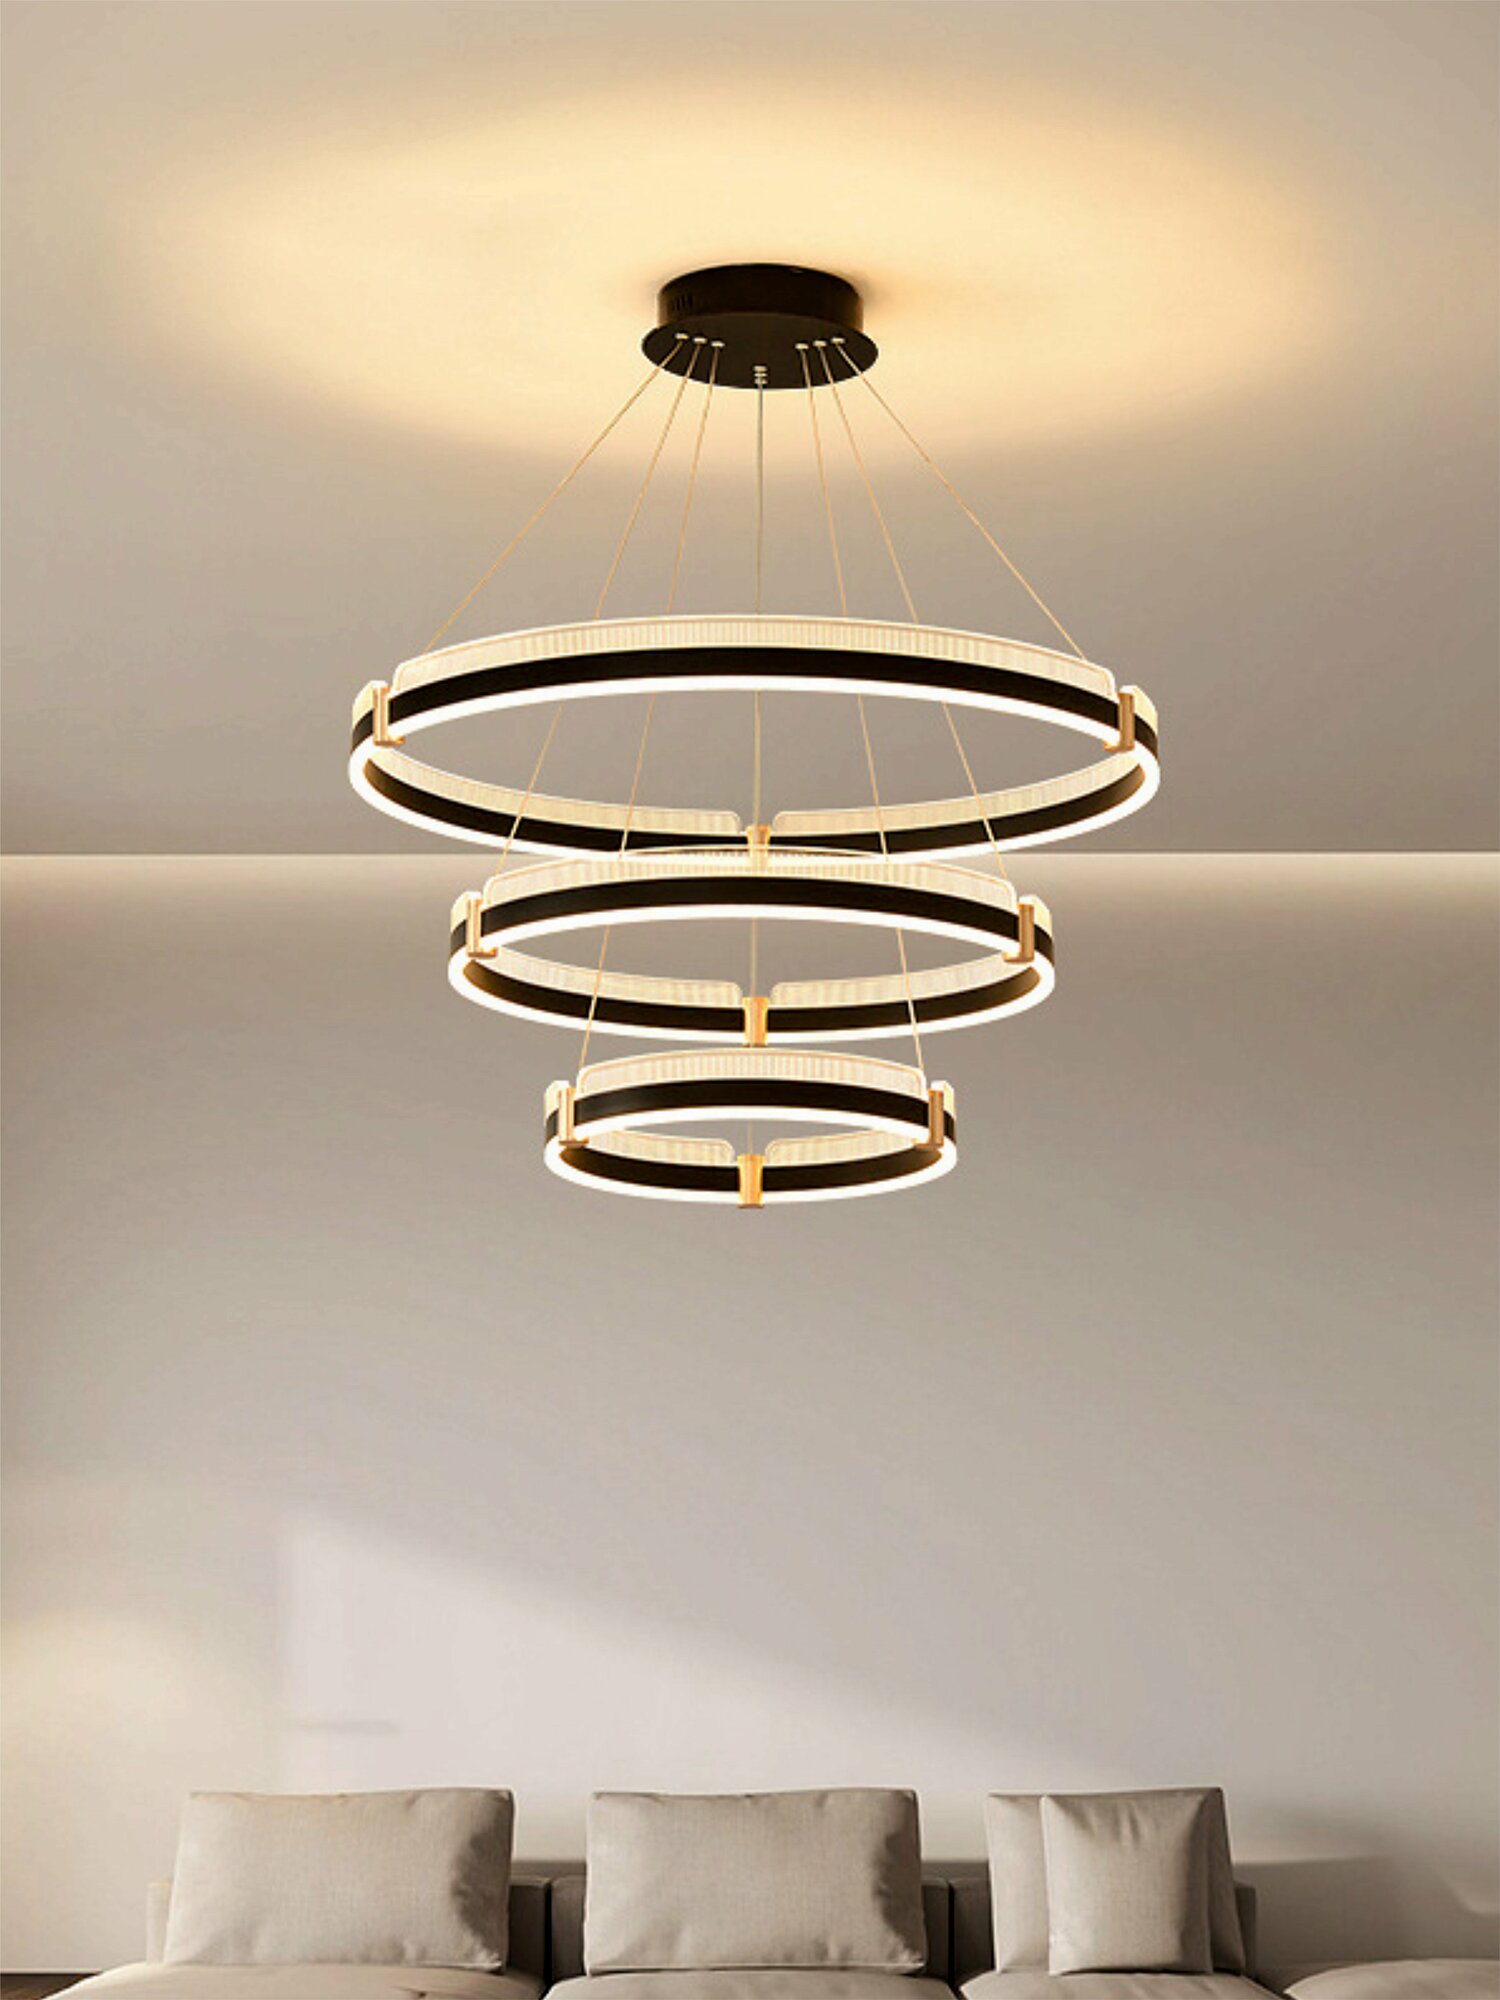 Светодиодная люстра подвесная VertexHome VER-9905/3 стиль модерн, на кухню, в детскую, в спальню, в гостиную